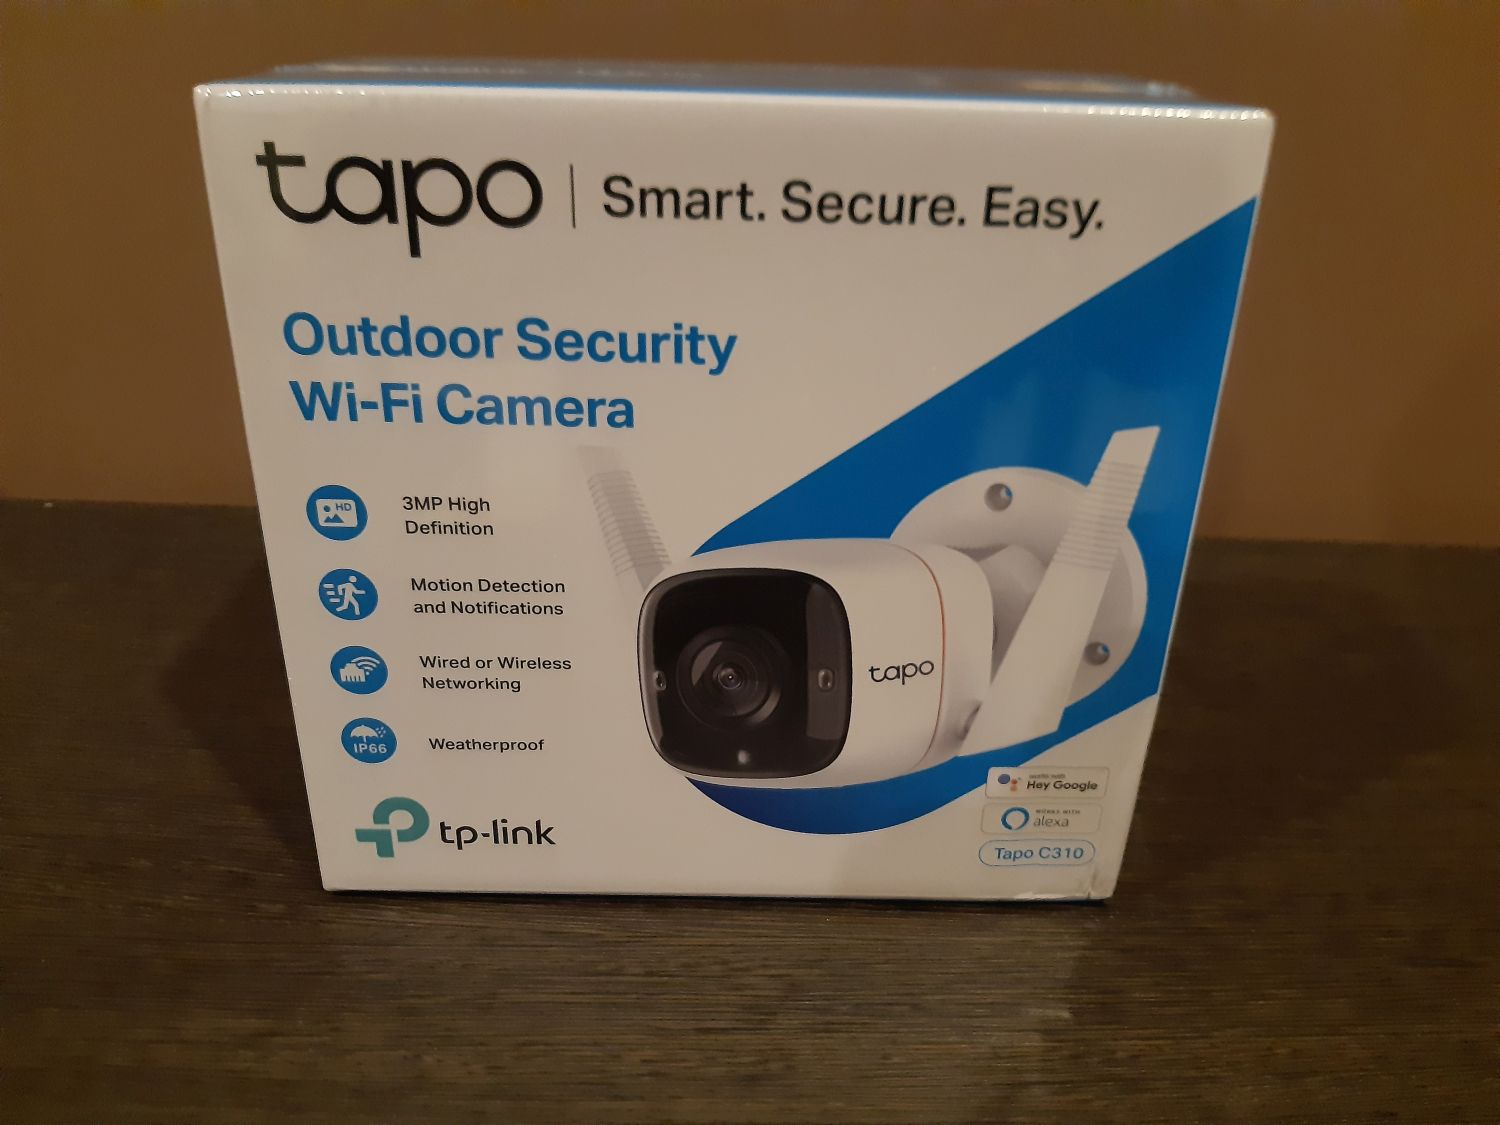 Test TP-Link Tapo C200 : la caméra de surveillance abordable, en